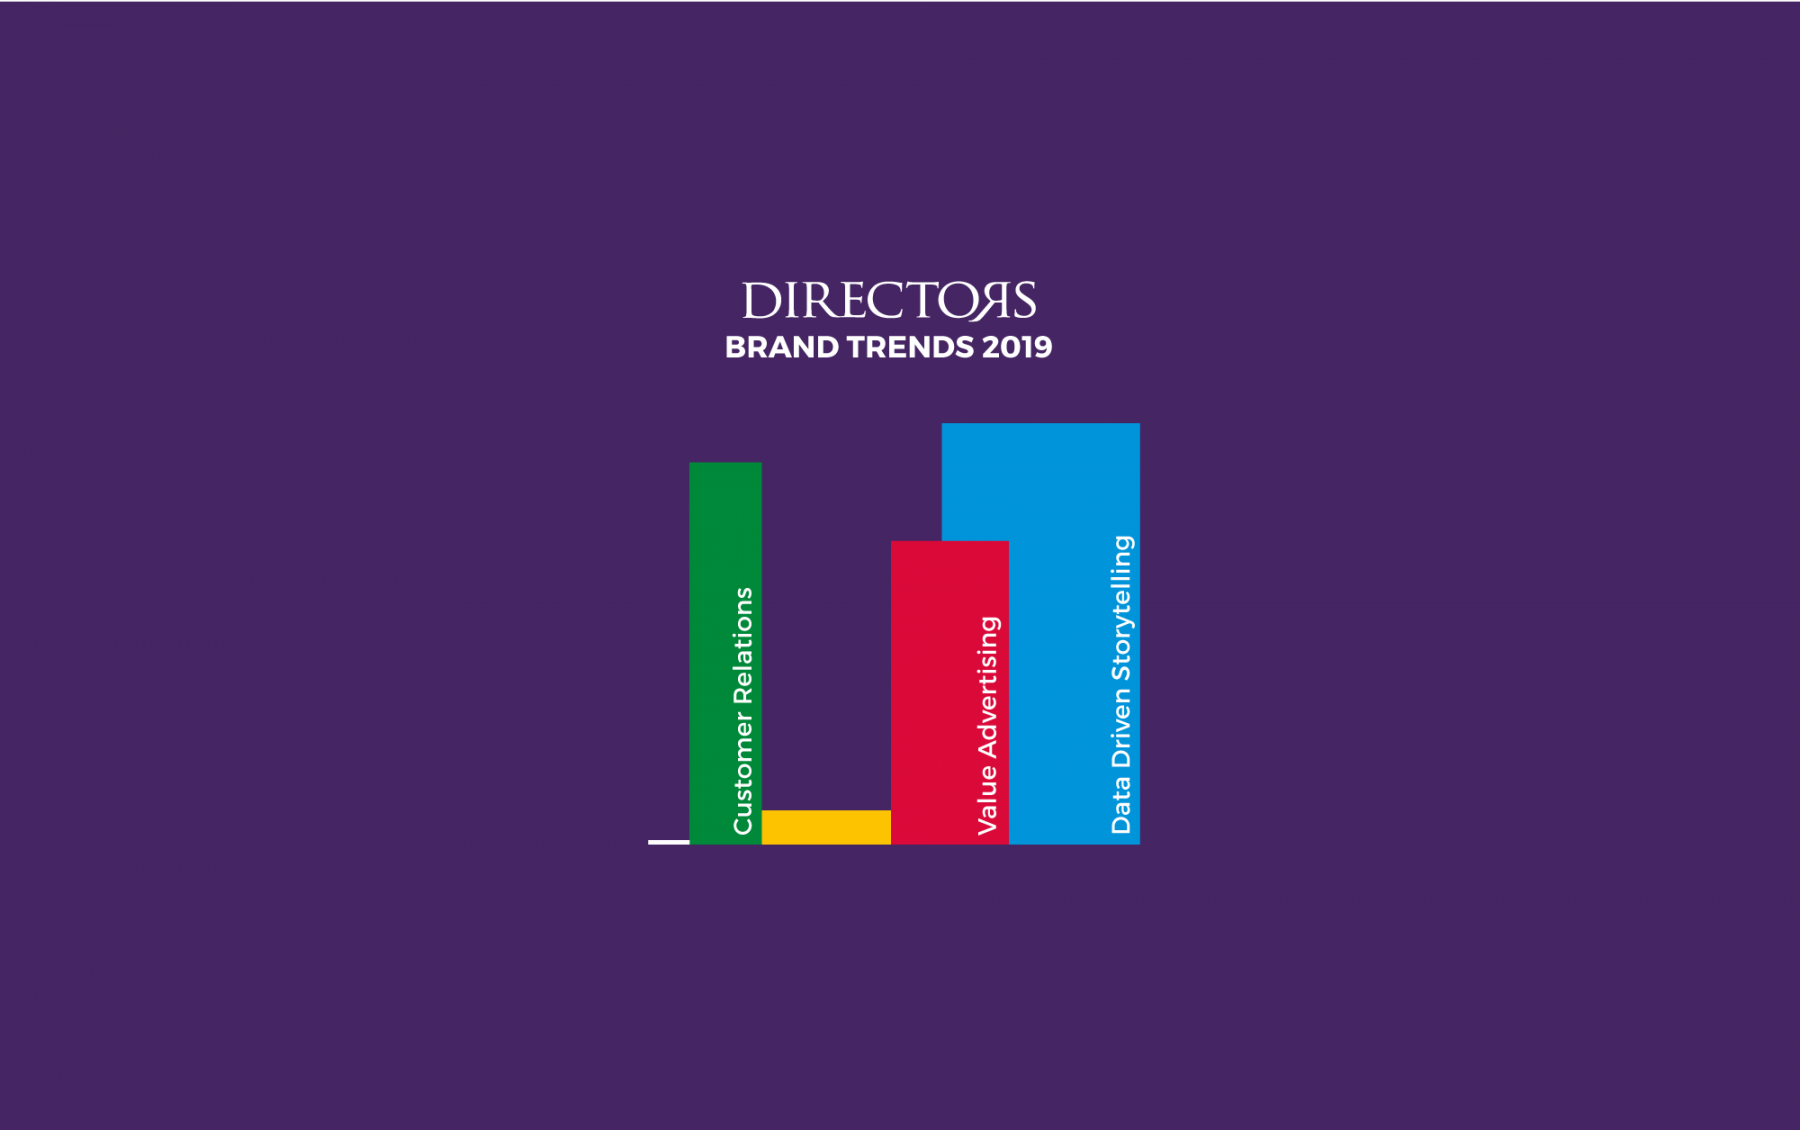 Directors Brand Trends 2019